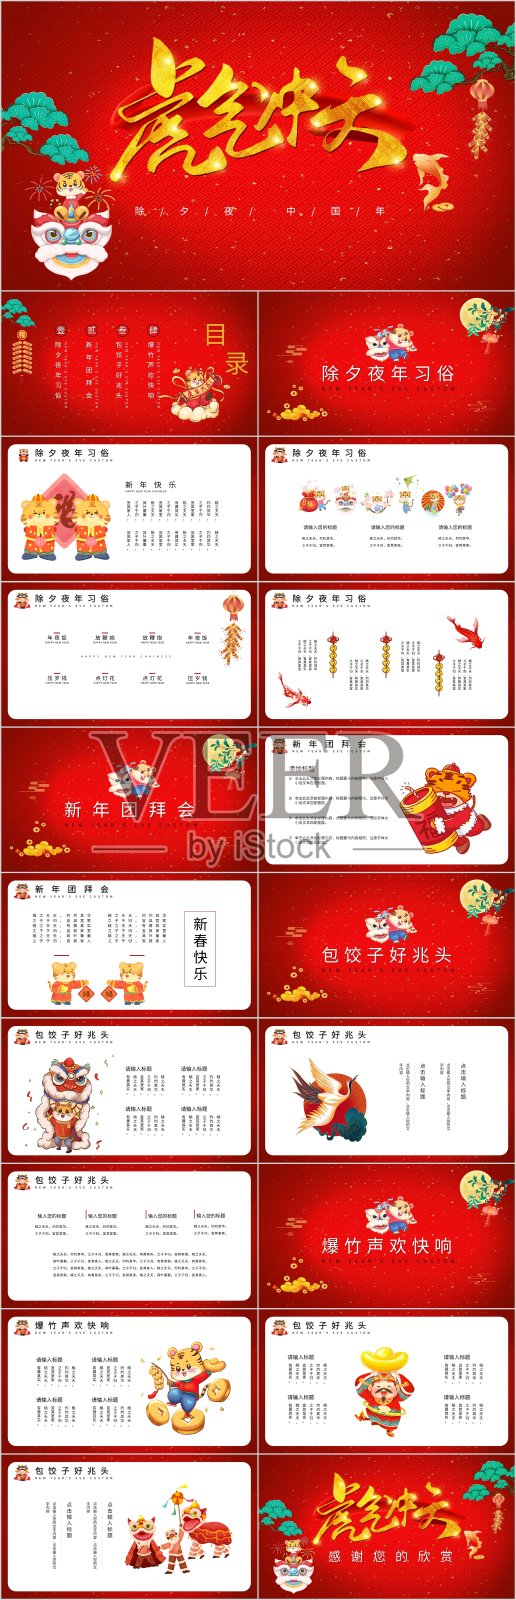 红色中国风虎年春节PPT模板设计模板素材